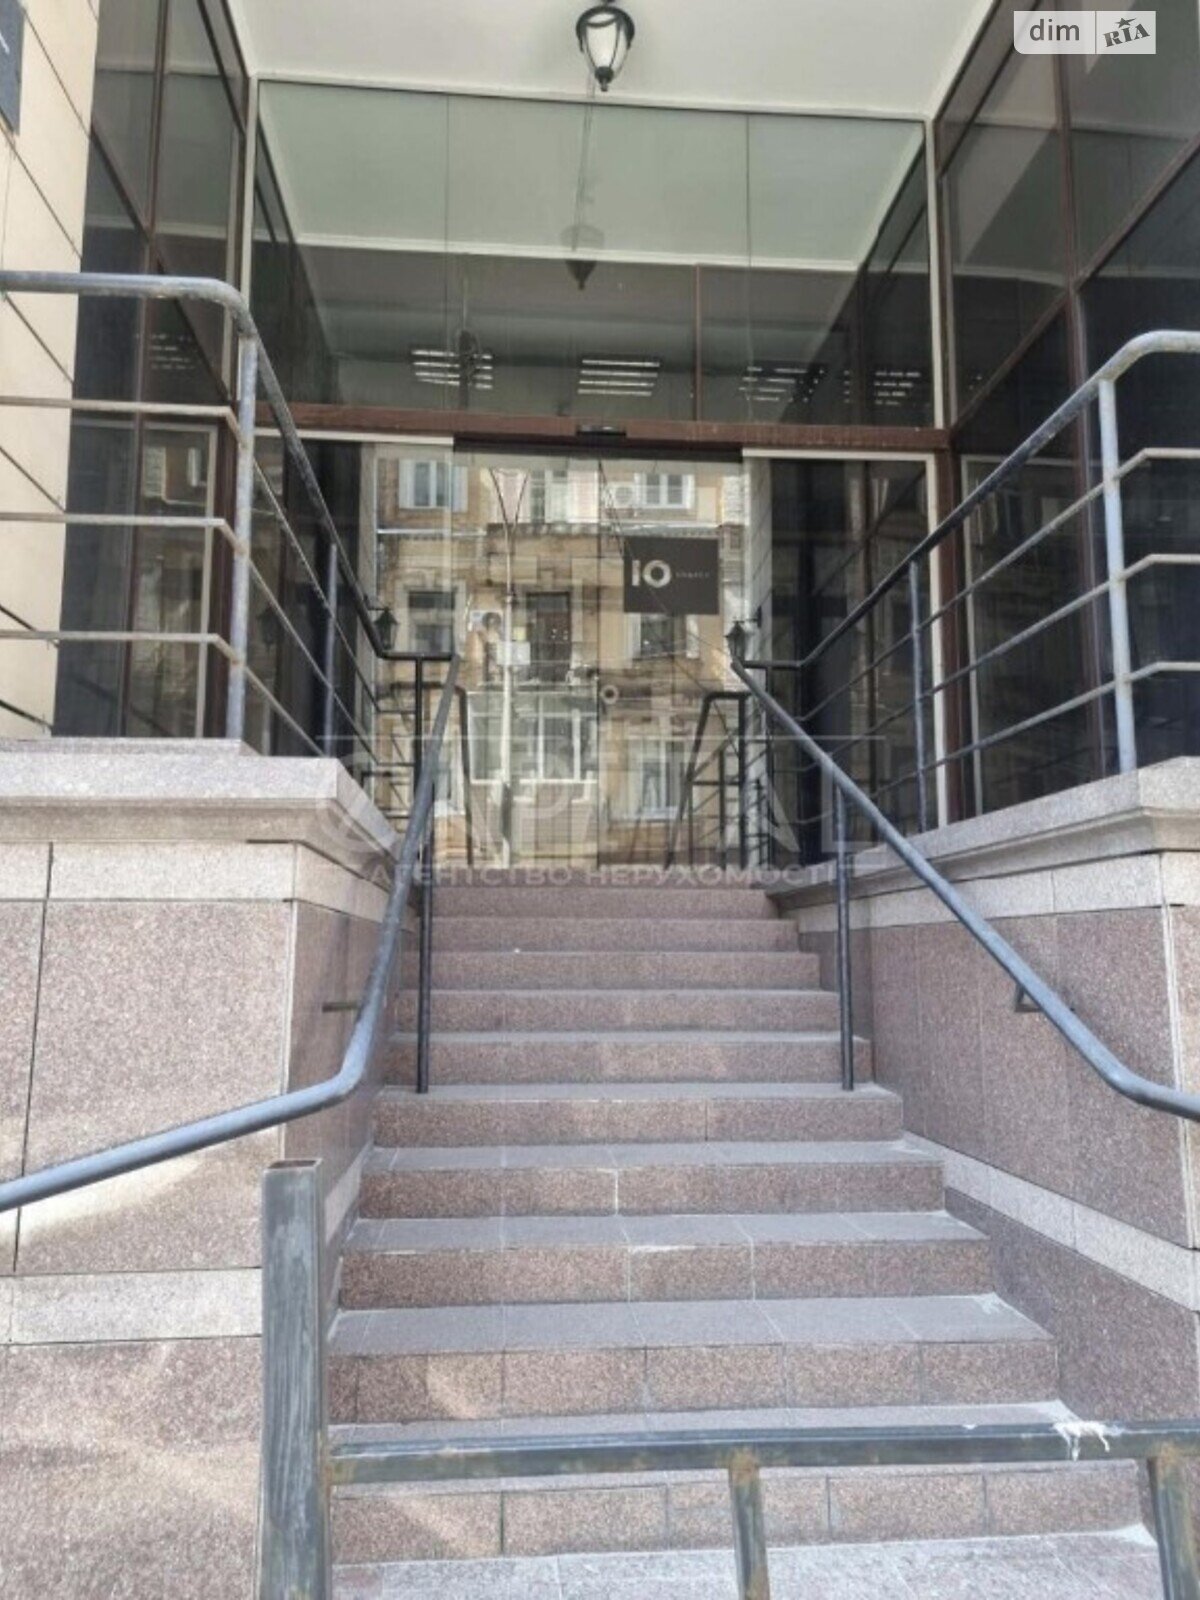 Аренда офисного помещения в Киеве, Круглоуниверситетская улица 3-5, помещений - 5, этаж - 1 фото 1